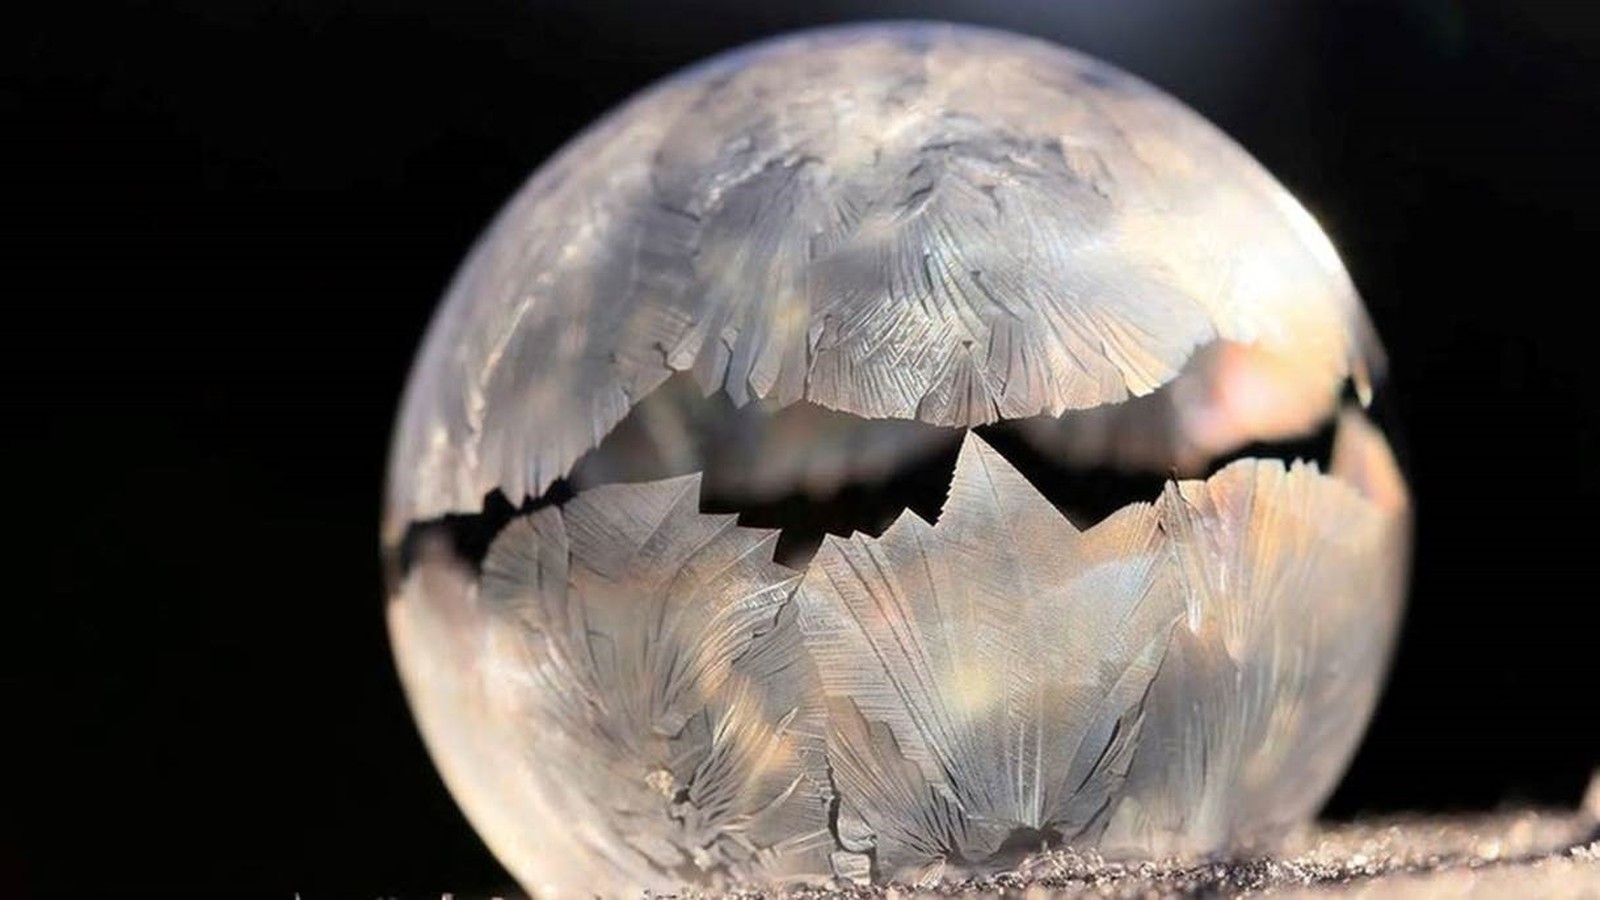 Esta bolha de sabão manteve o formato ao congelar (Foto: DANIELA RAPAV/Royal Photographic Society)